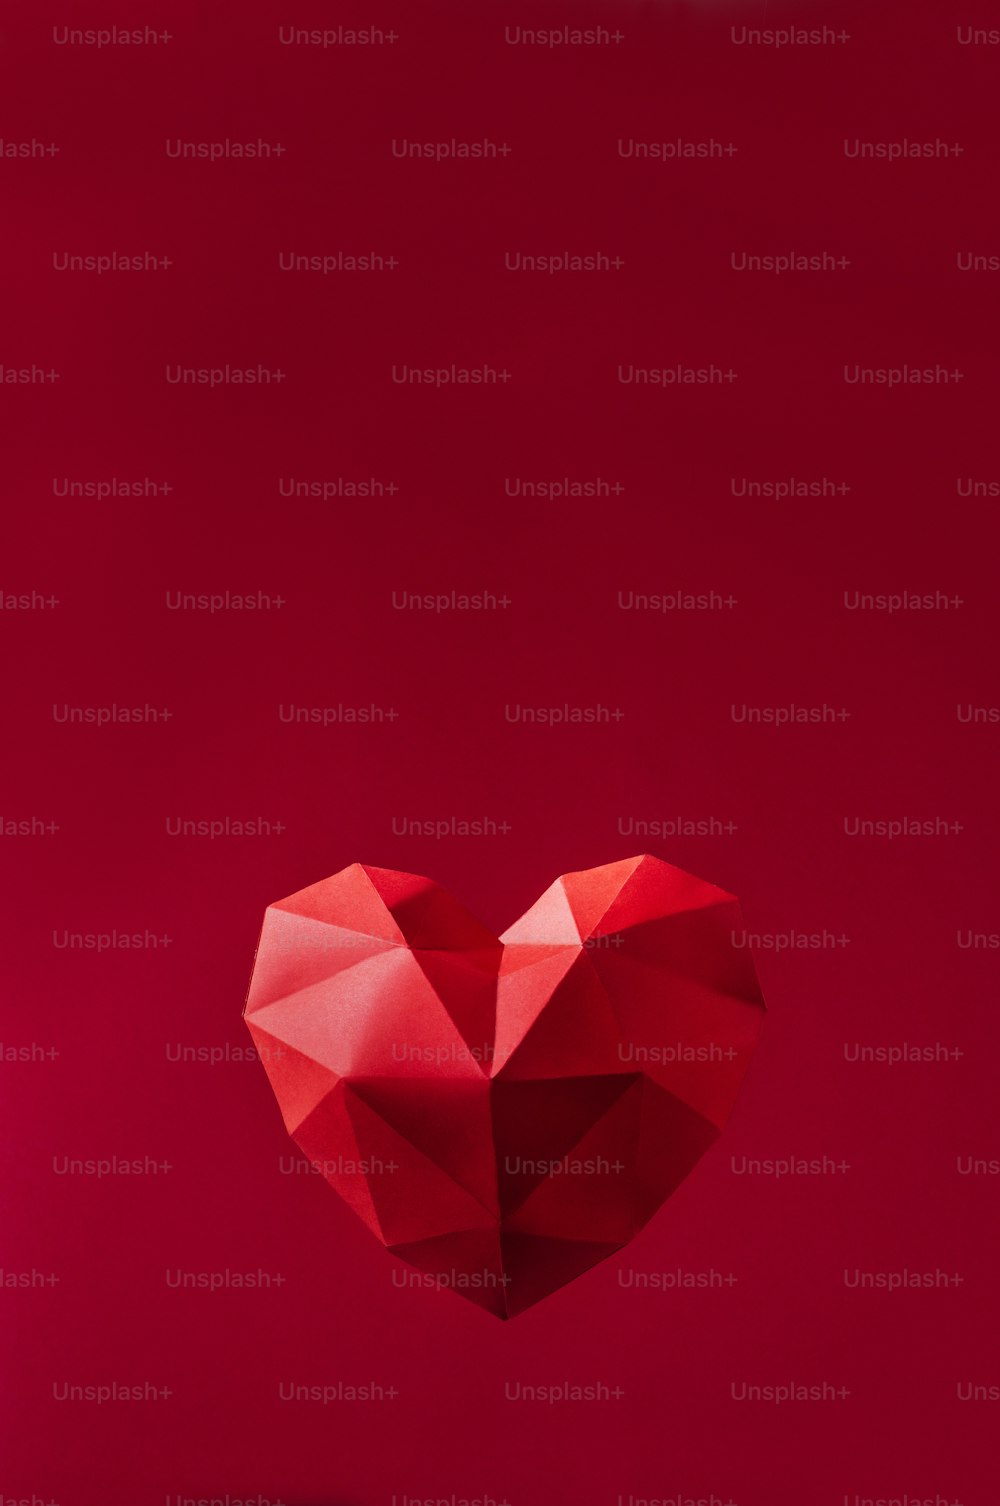 발렌타인 데이 배경 개념입니다. 빨간색 배경에 종이에 기하학적 볼륨 하트, 텍스트를 위한 빈 공간이 있습니다.